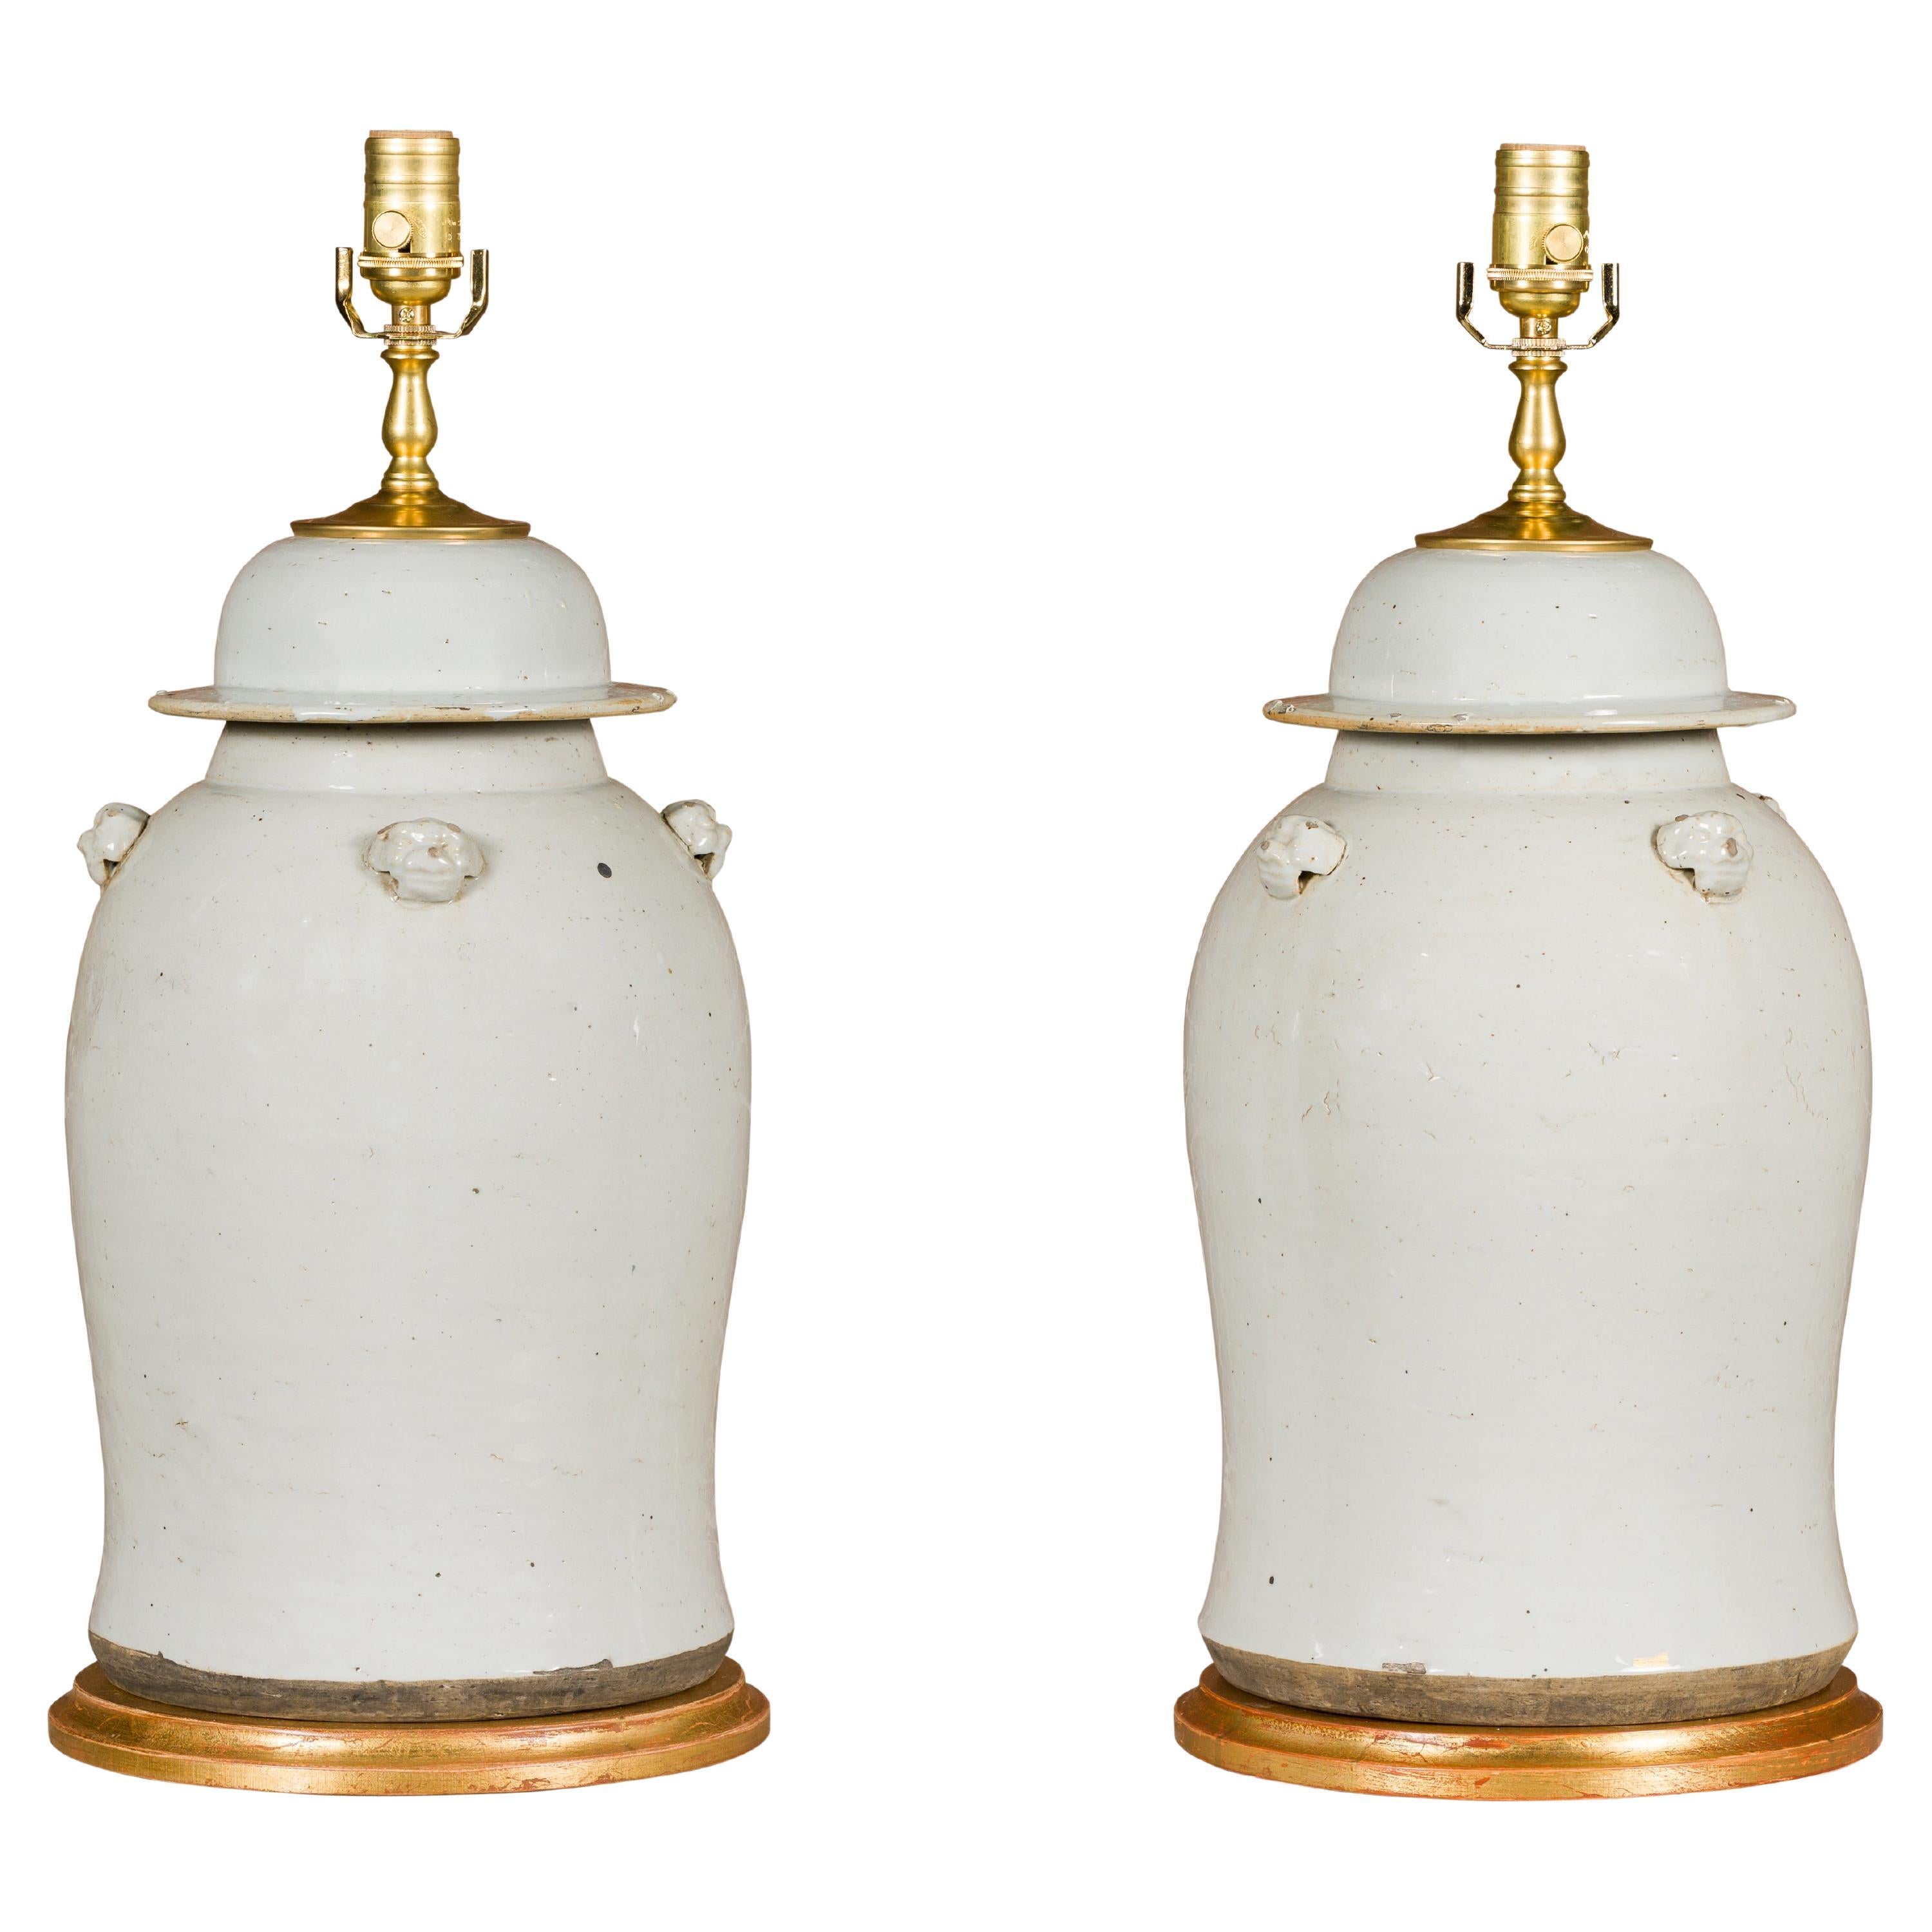 Paire d'urnes à couvercle en porcelaine blanche transformées en lampes de table sur bases dorées